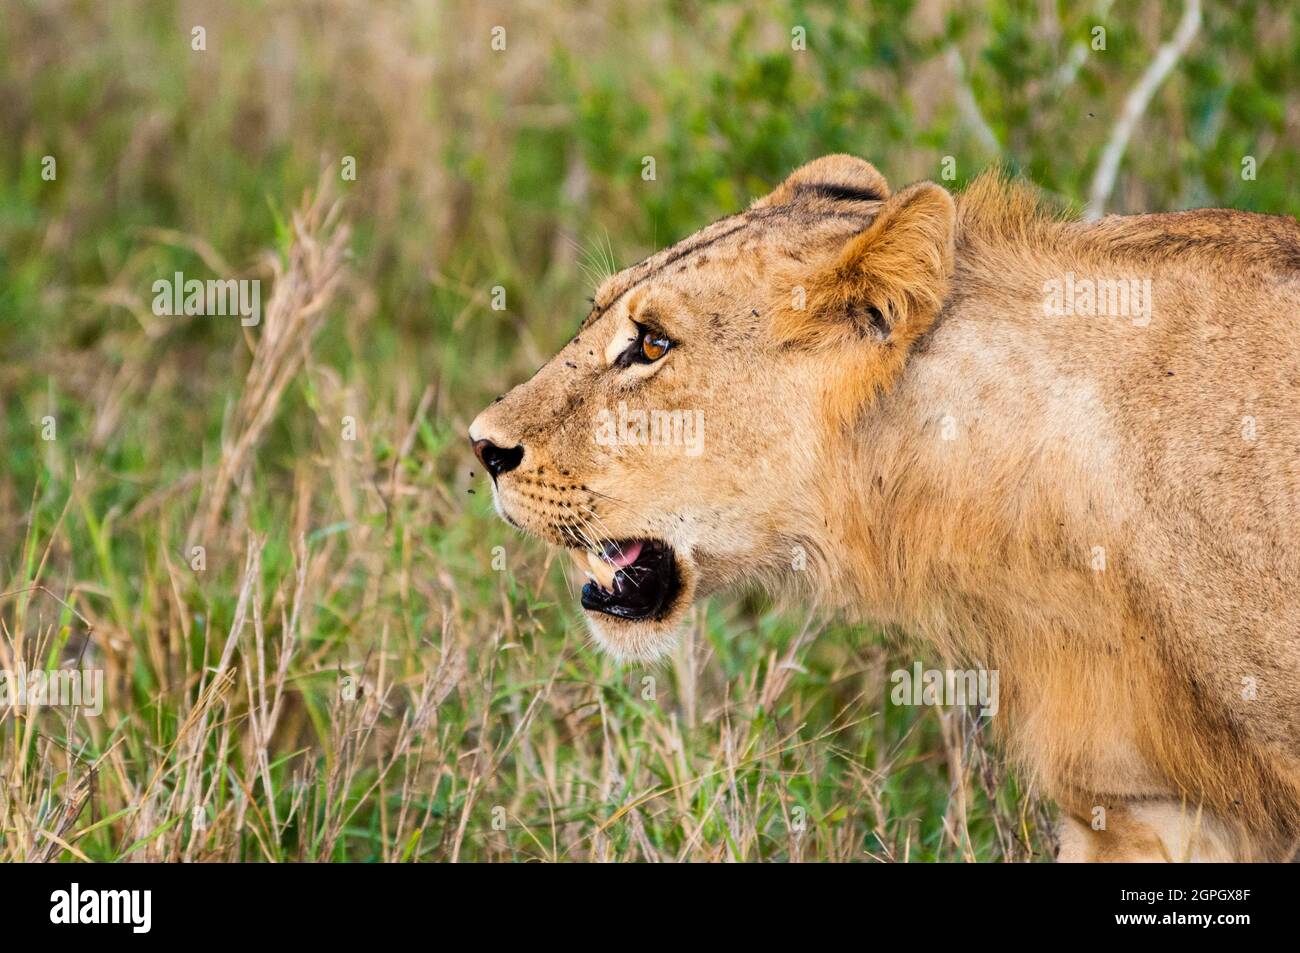 Kenya, parc national de Tsavo East, un jeune lion mâle (Panthera leo) Banque D'Images